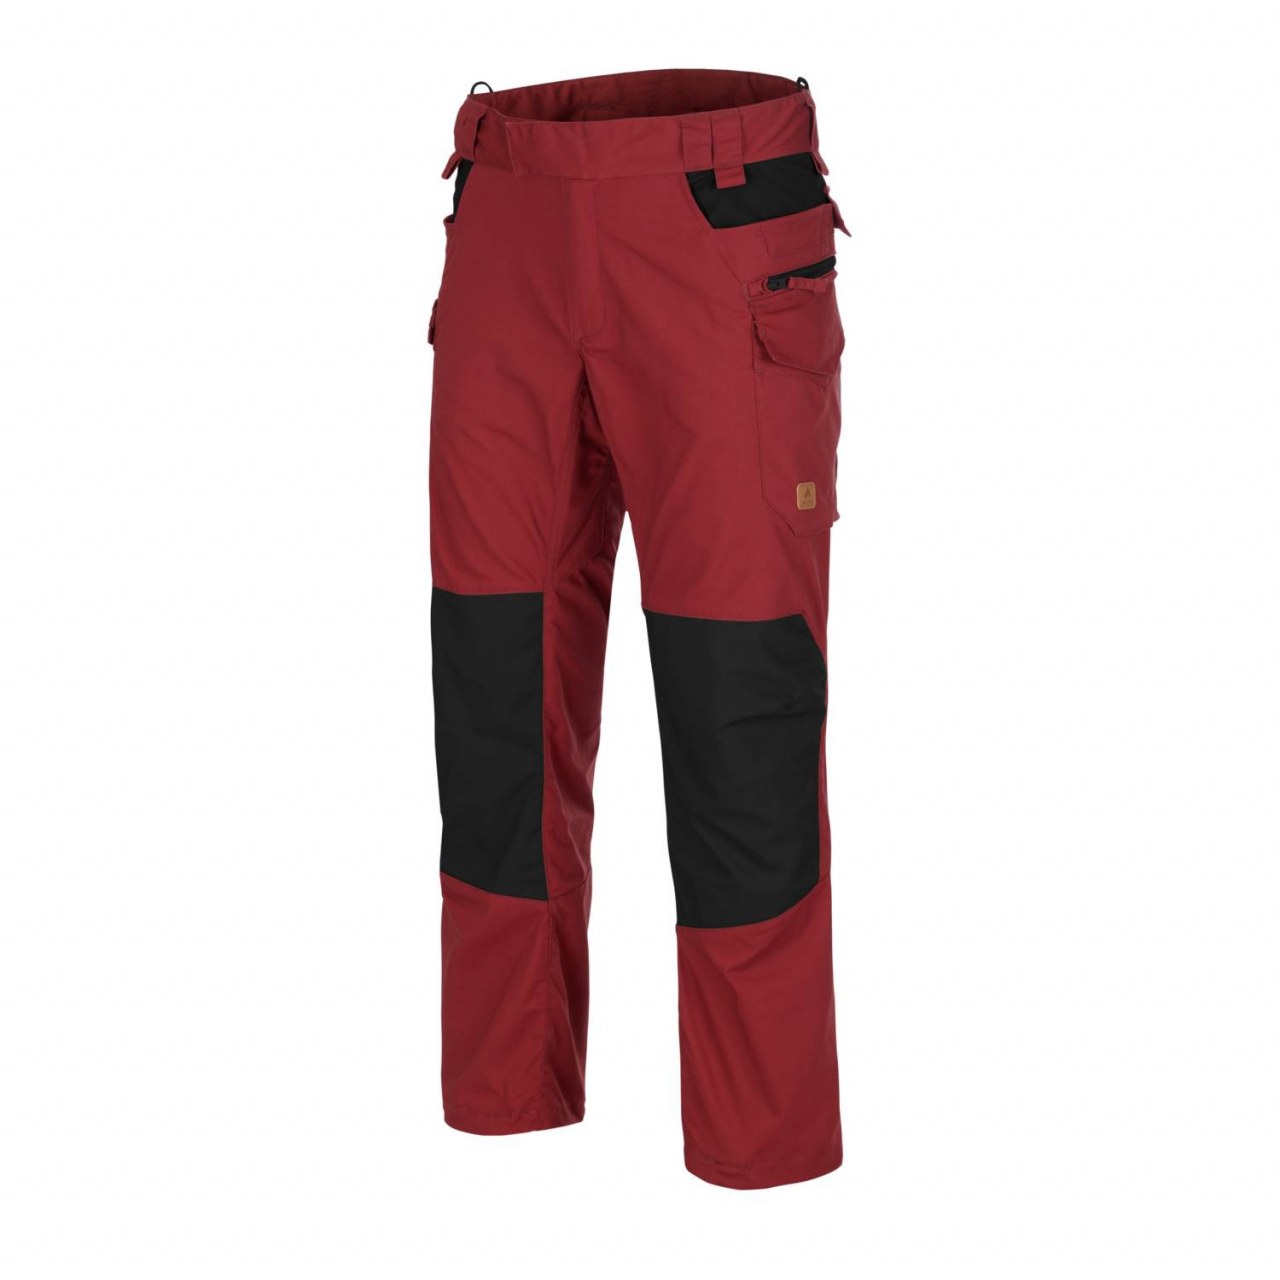 Kalhoty Helikon Pilgrim - červené-černé, XXL Long